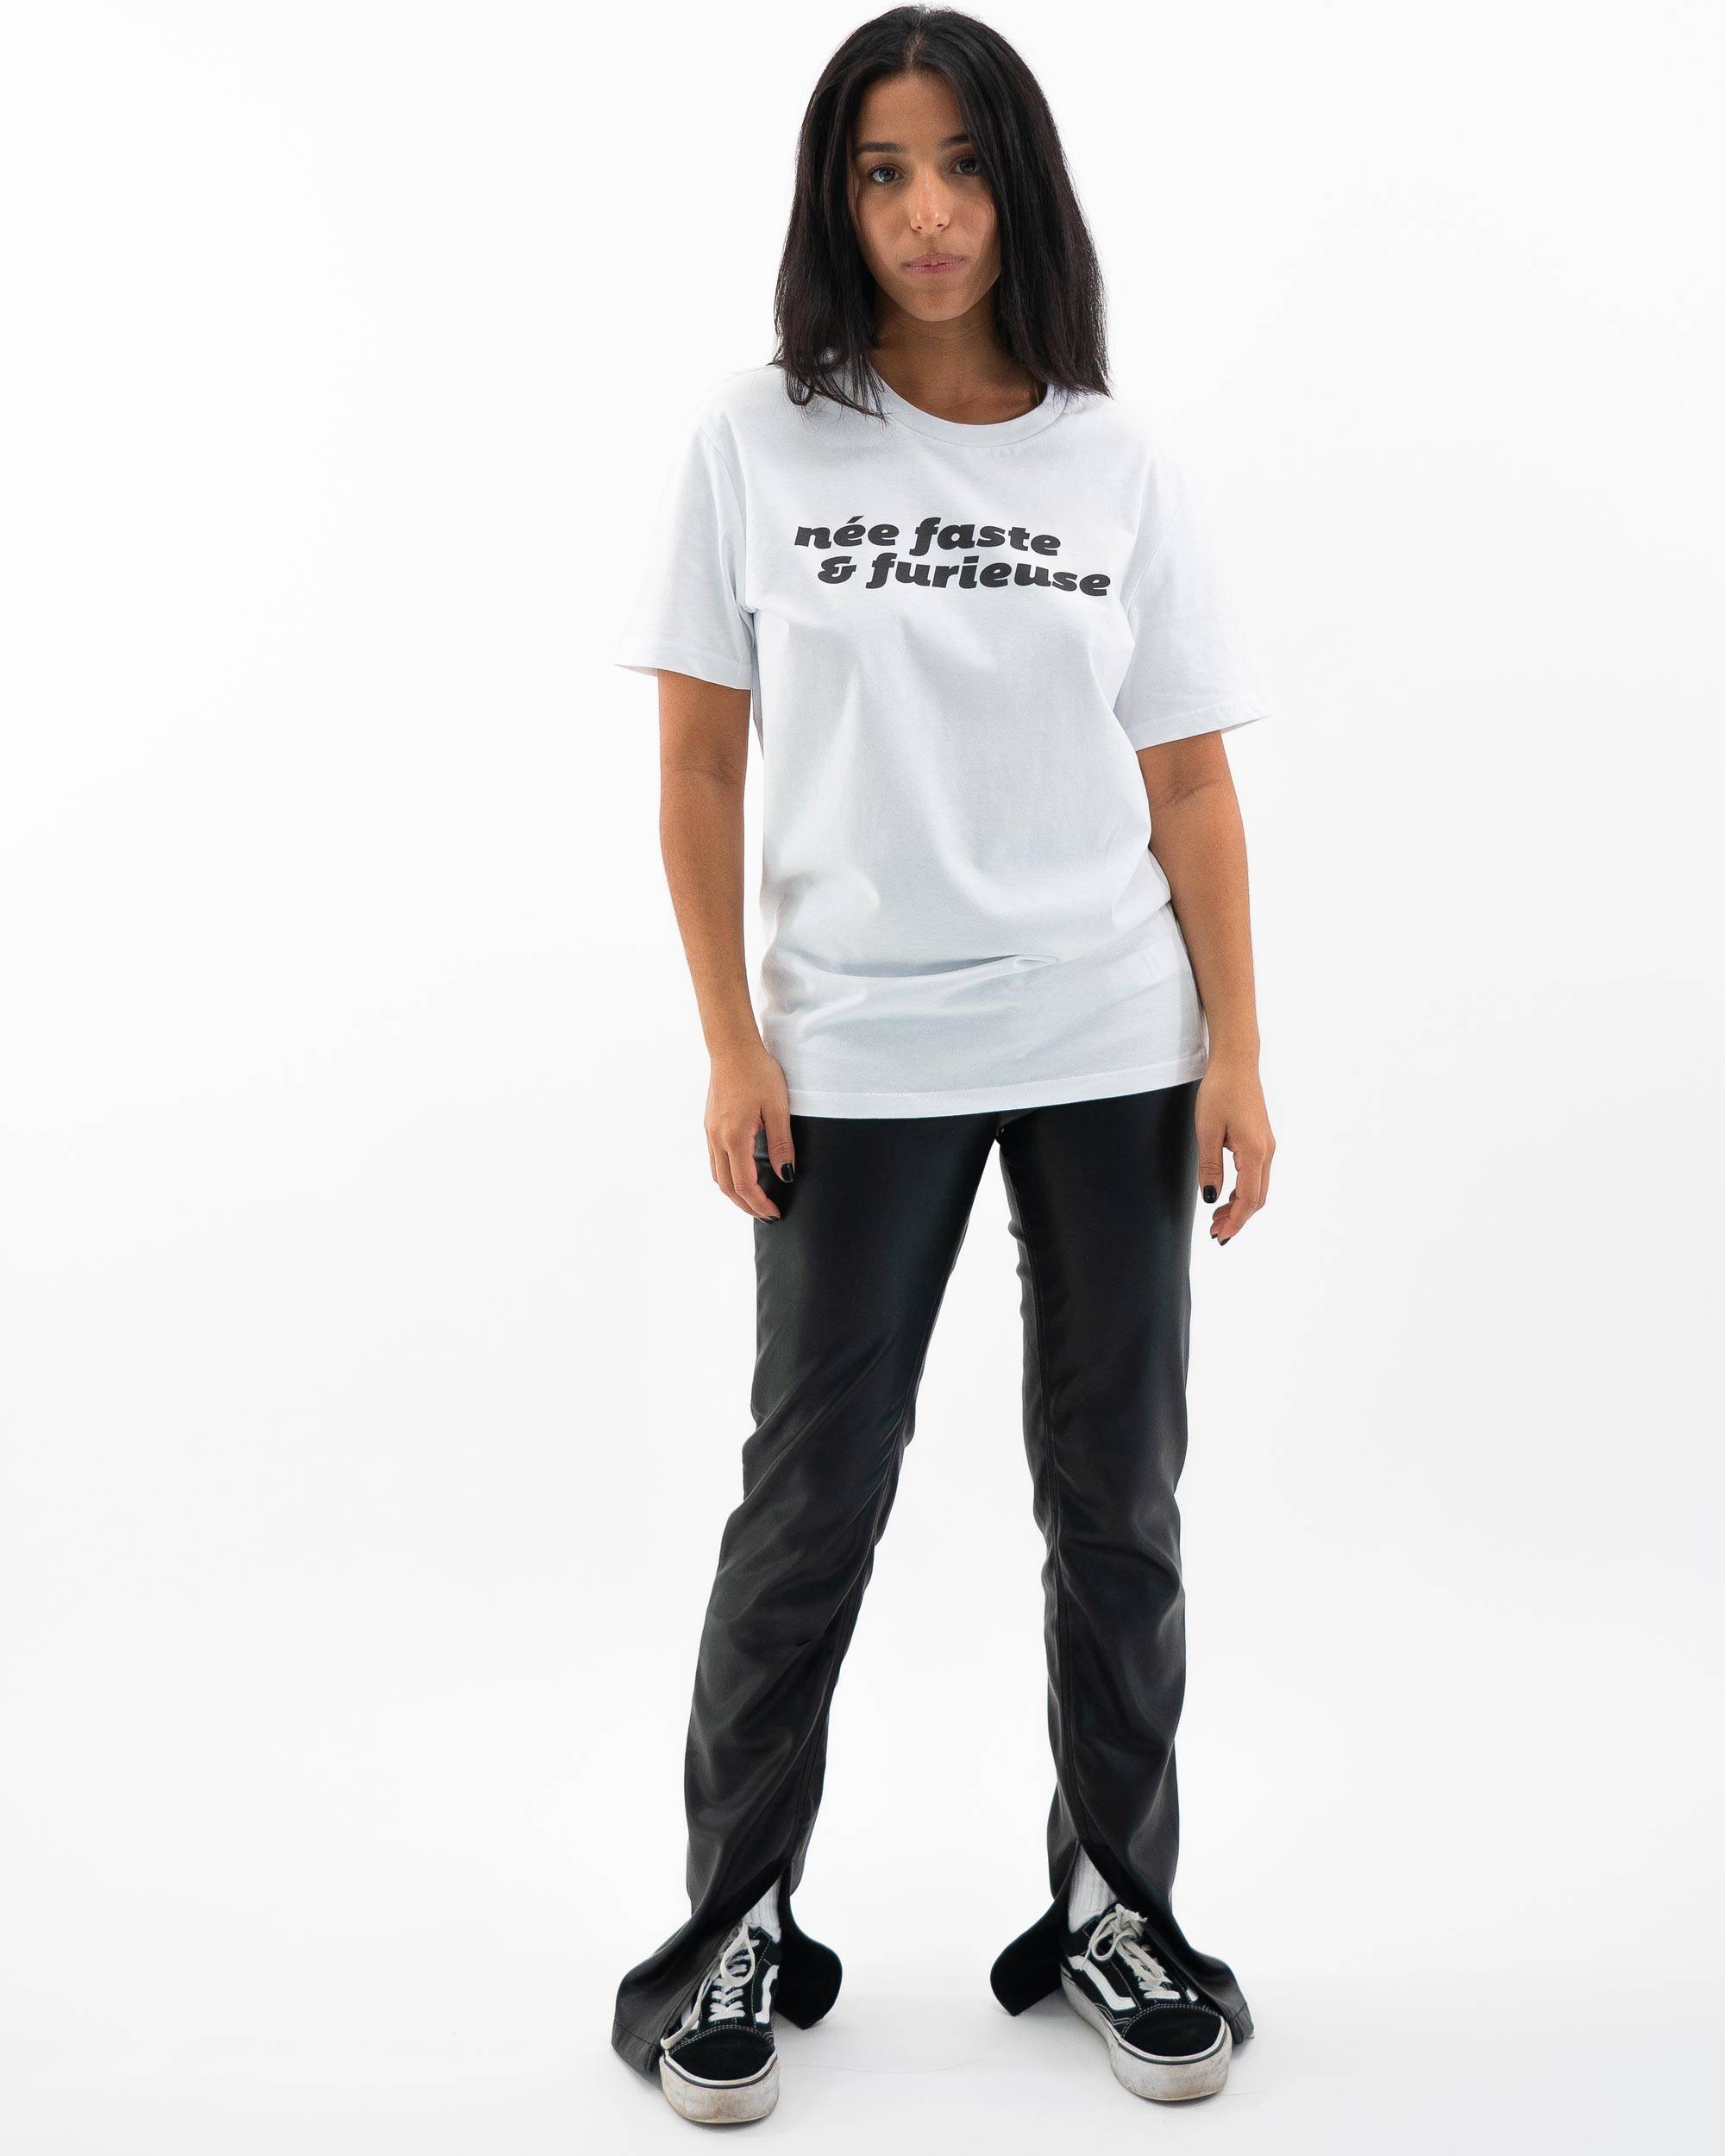 T-shirt Née Faste & Furieuse de couleur Blanc par GRL PWR